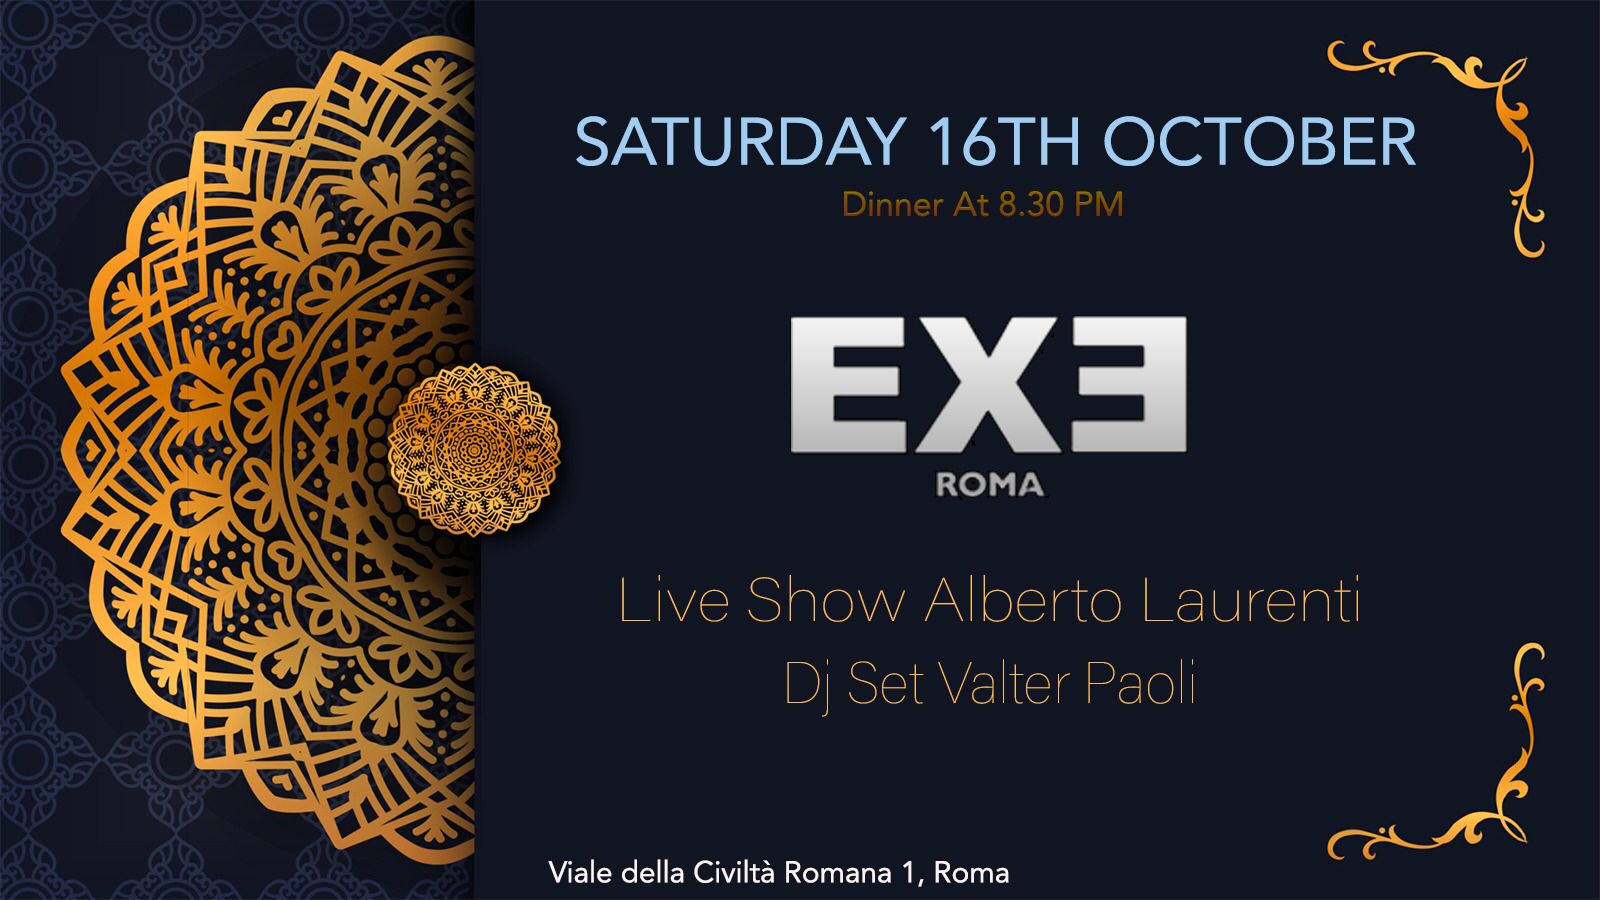 Exe Roma Sabato 16 Ottobre 2021 - Cena spettacolo 